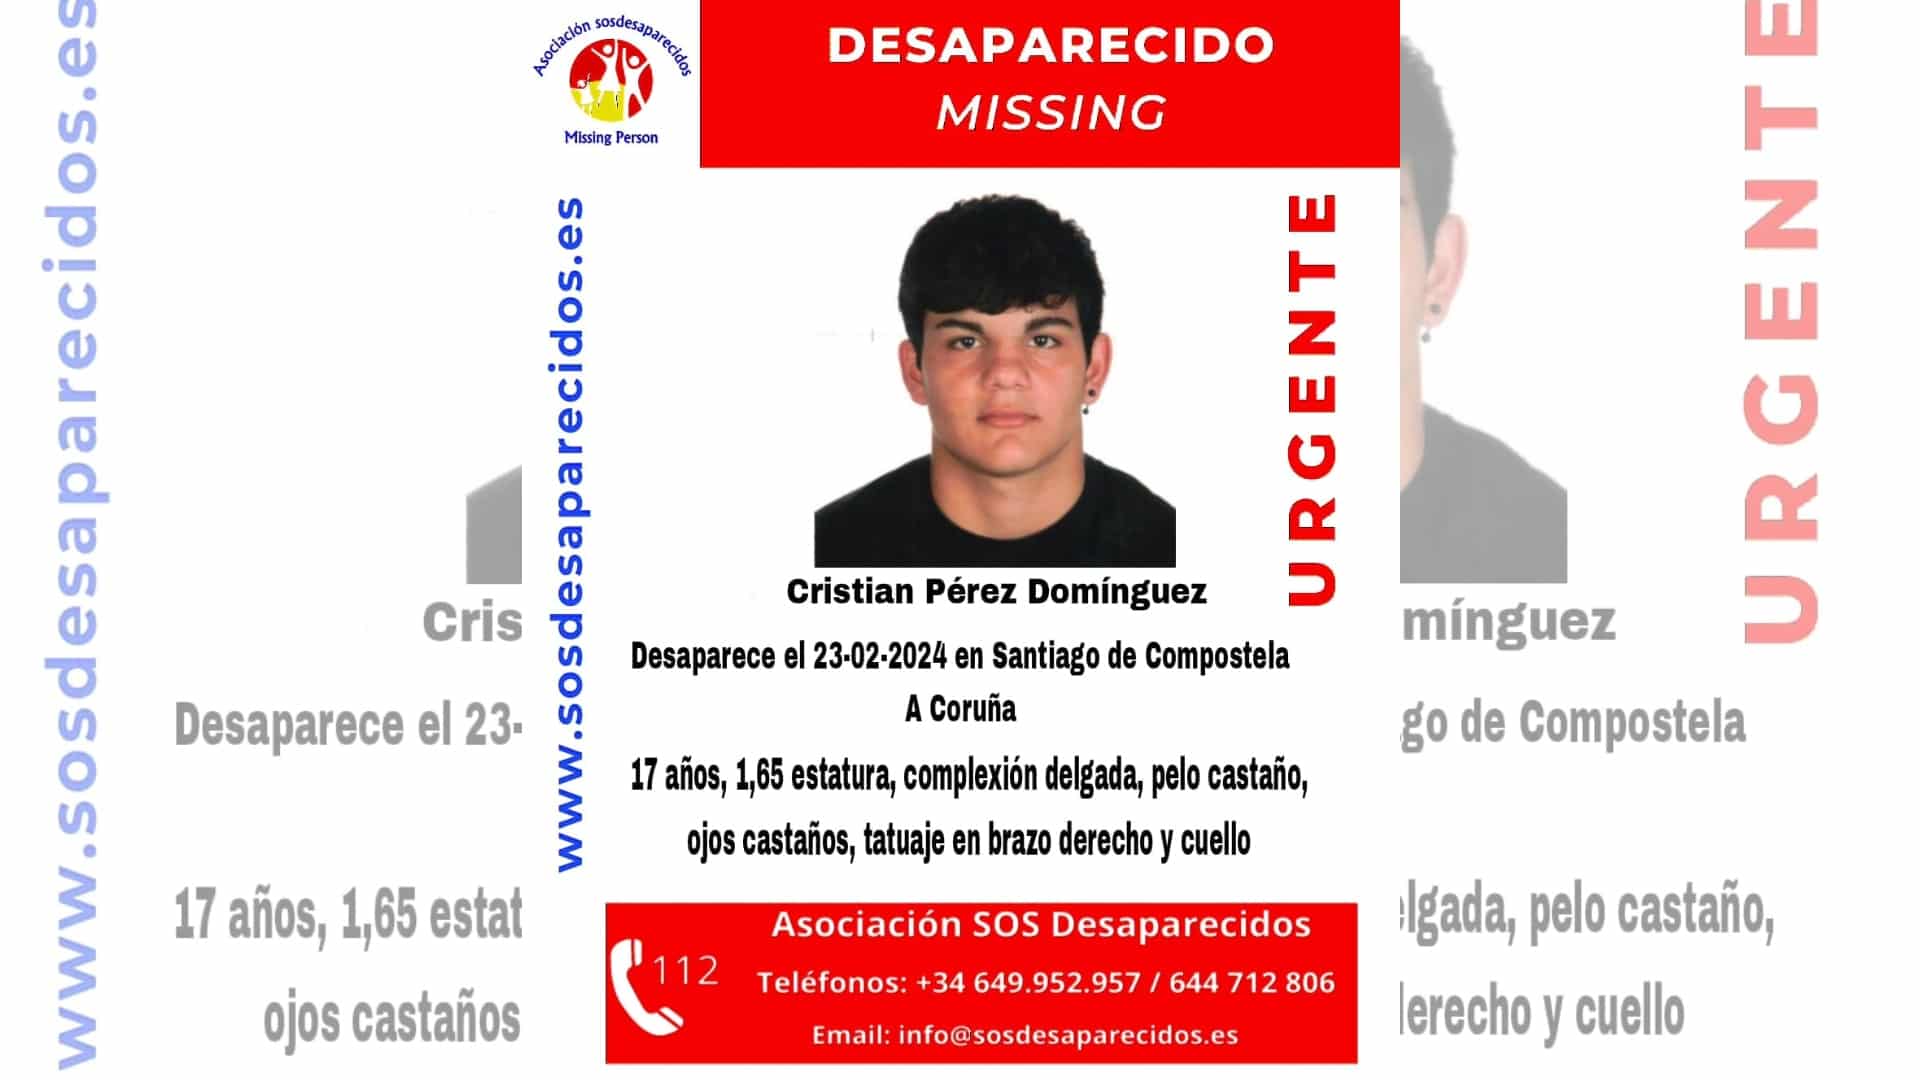 Cristian Pérez Domínguez, desaparecido desde el viernes 23 de febrero en Santiago | @SOSDESAPARECIDOS